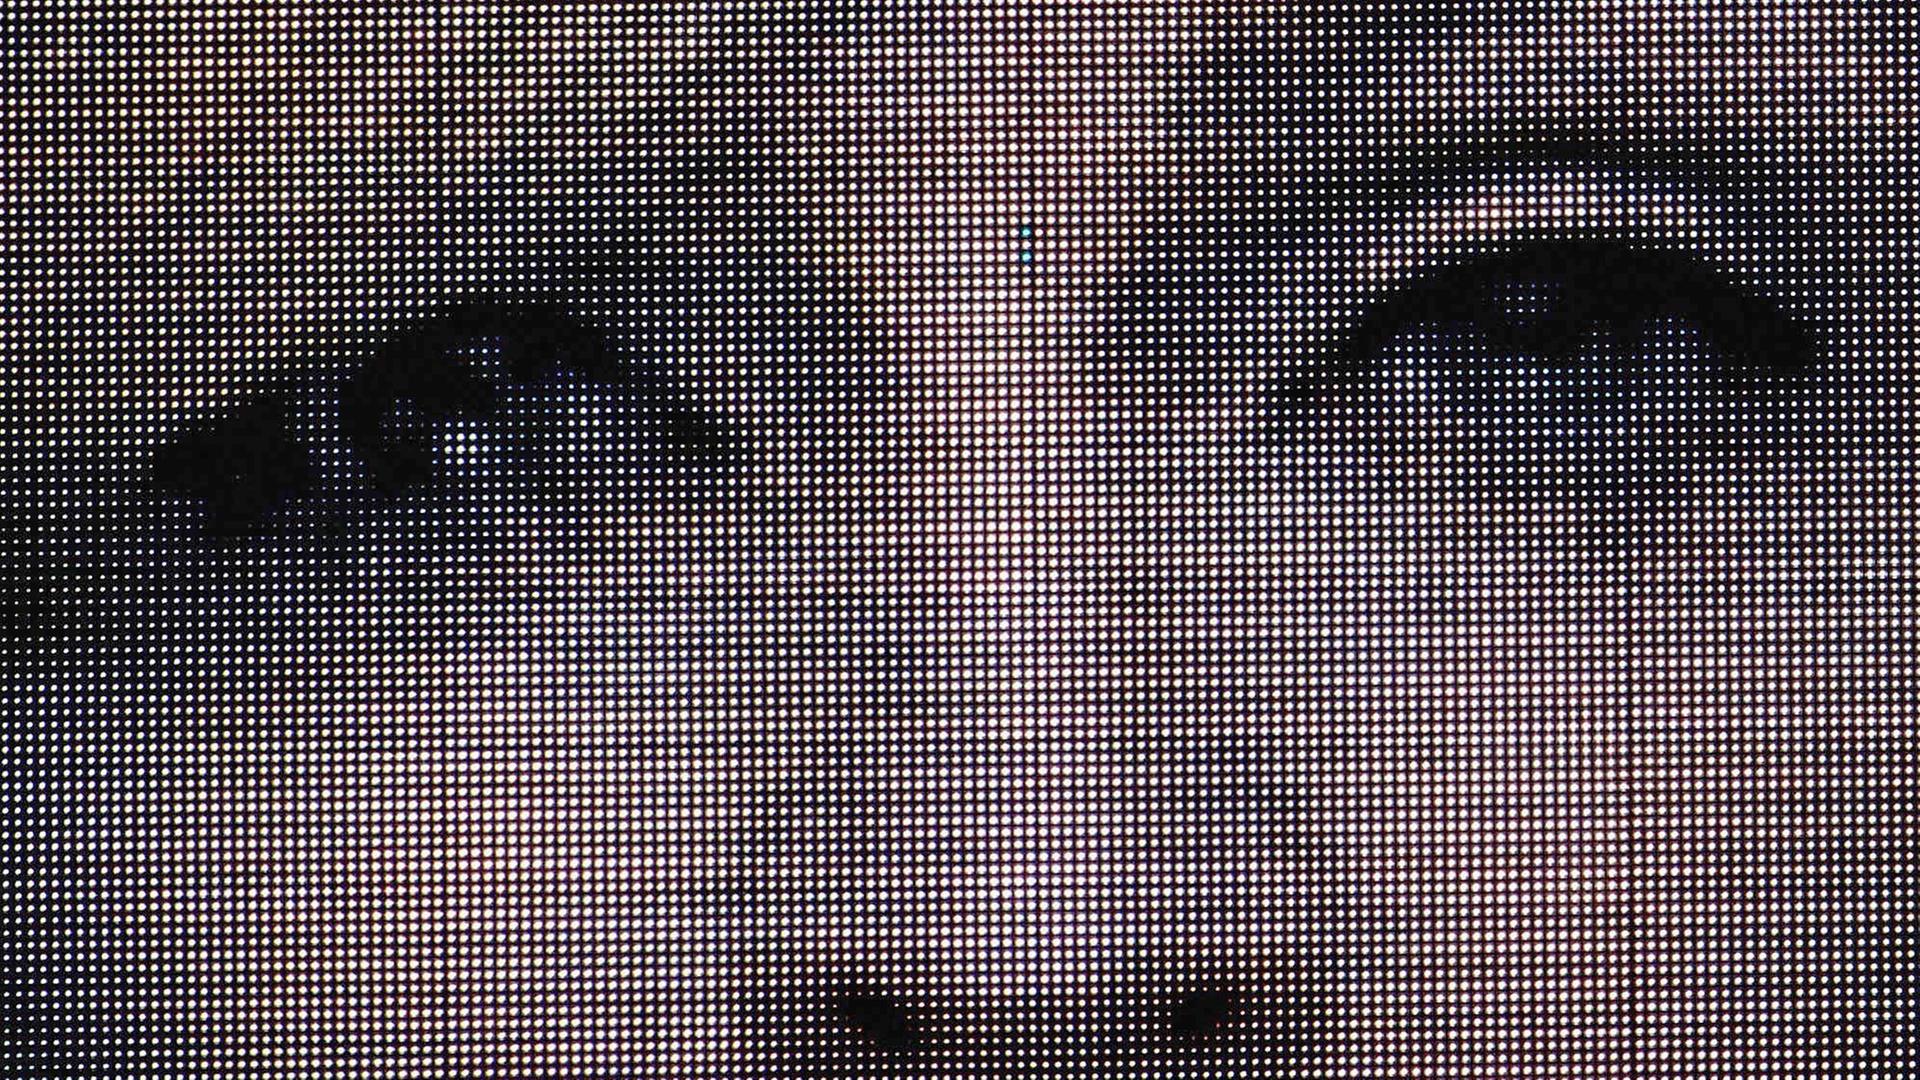 Eine Nahaufnahme der Künstlerin Madonna, auf einem überdimensionalen Bildschirm.